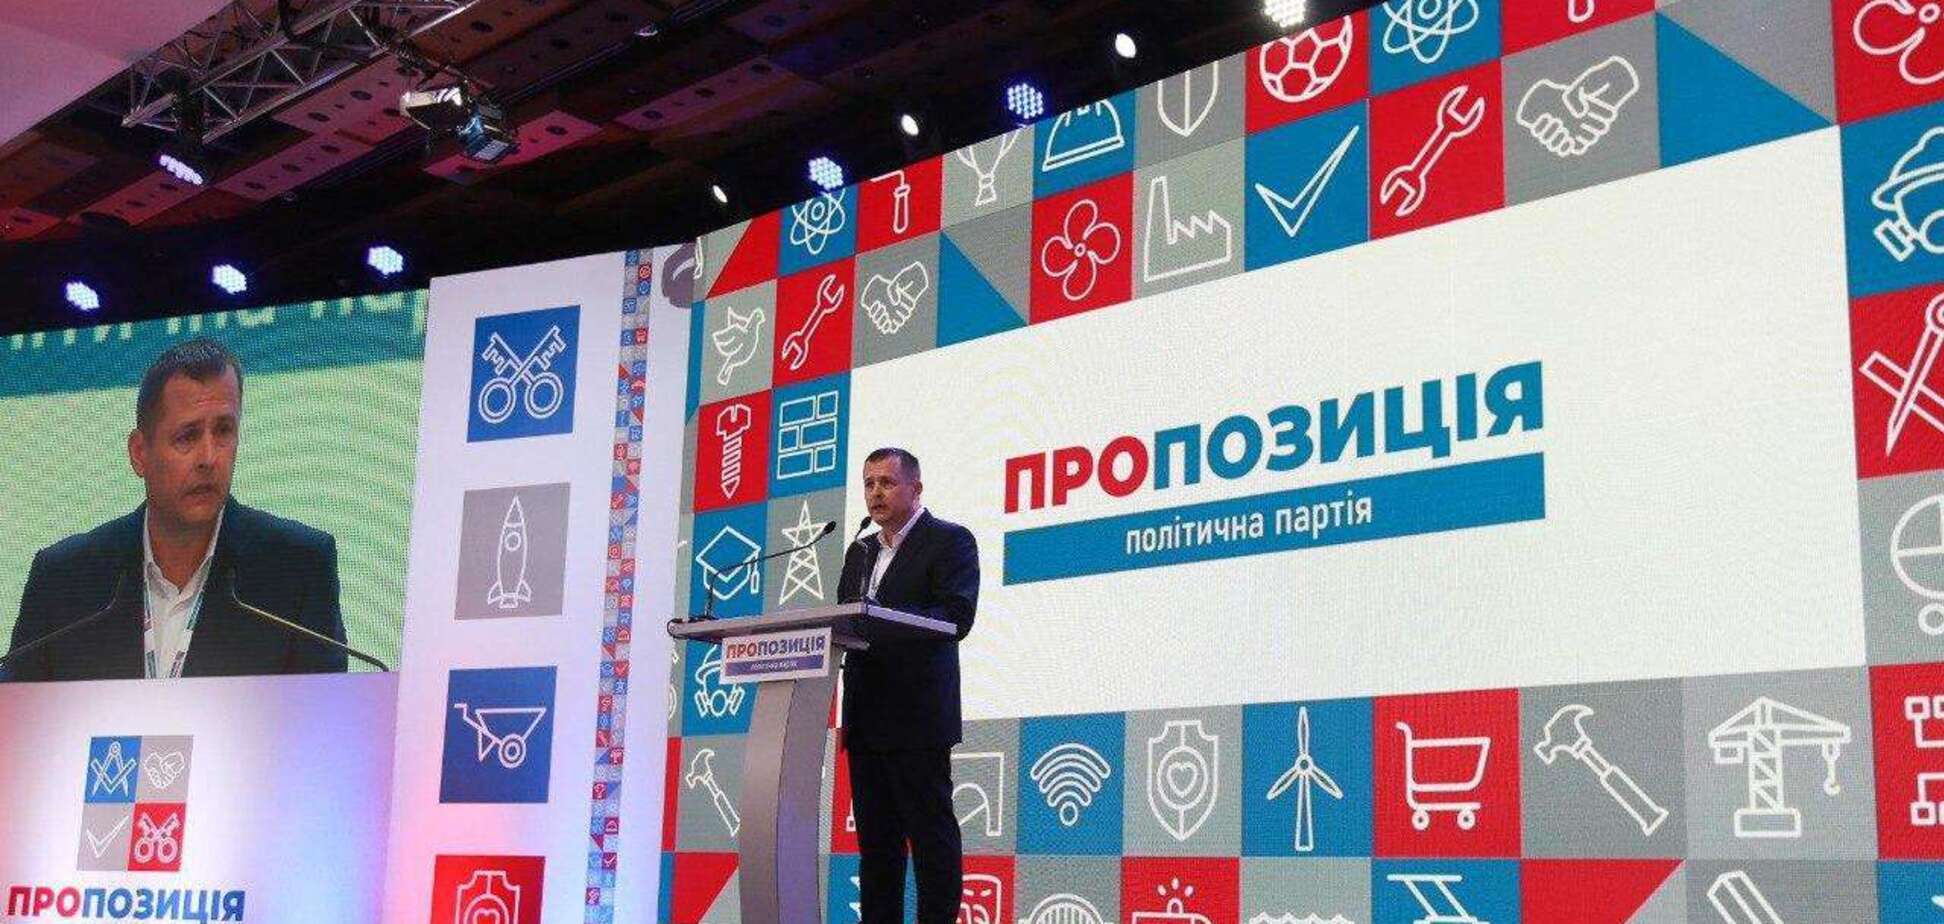 Партія 'Пропозиція' впевнено перемагає на виборах до обласної та до міської рад, – Філатов